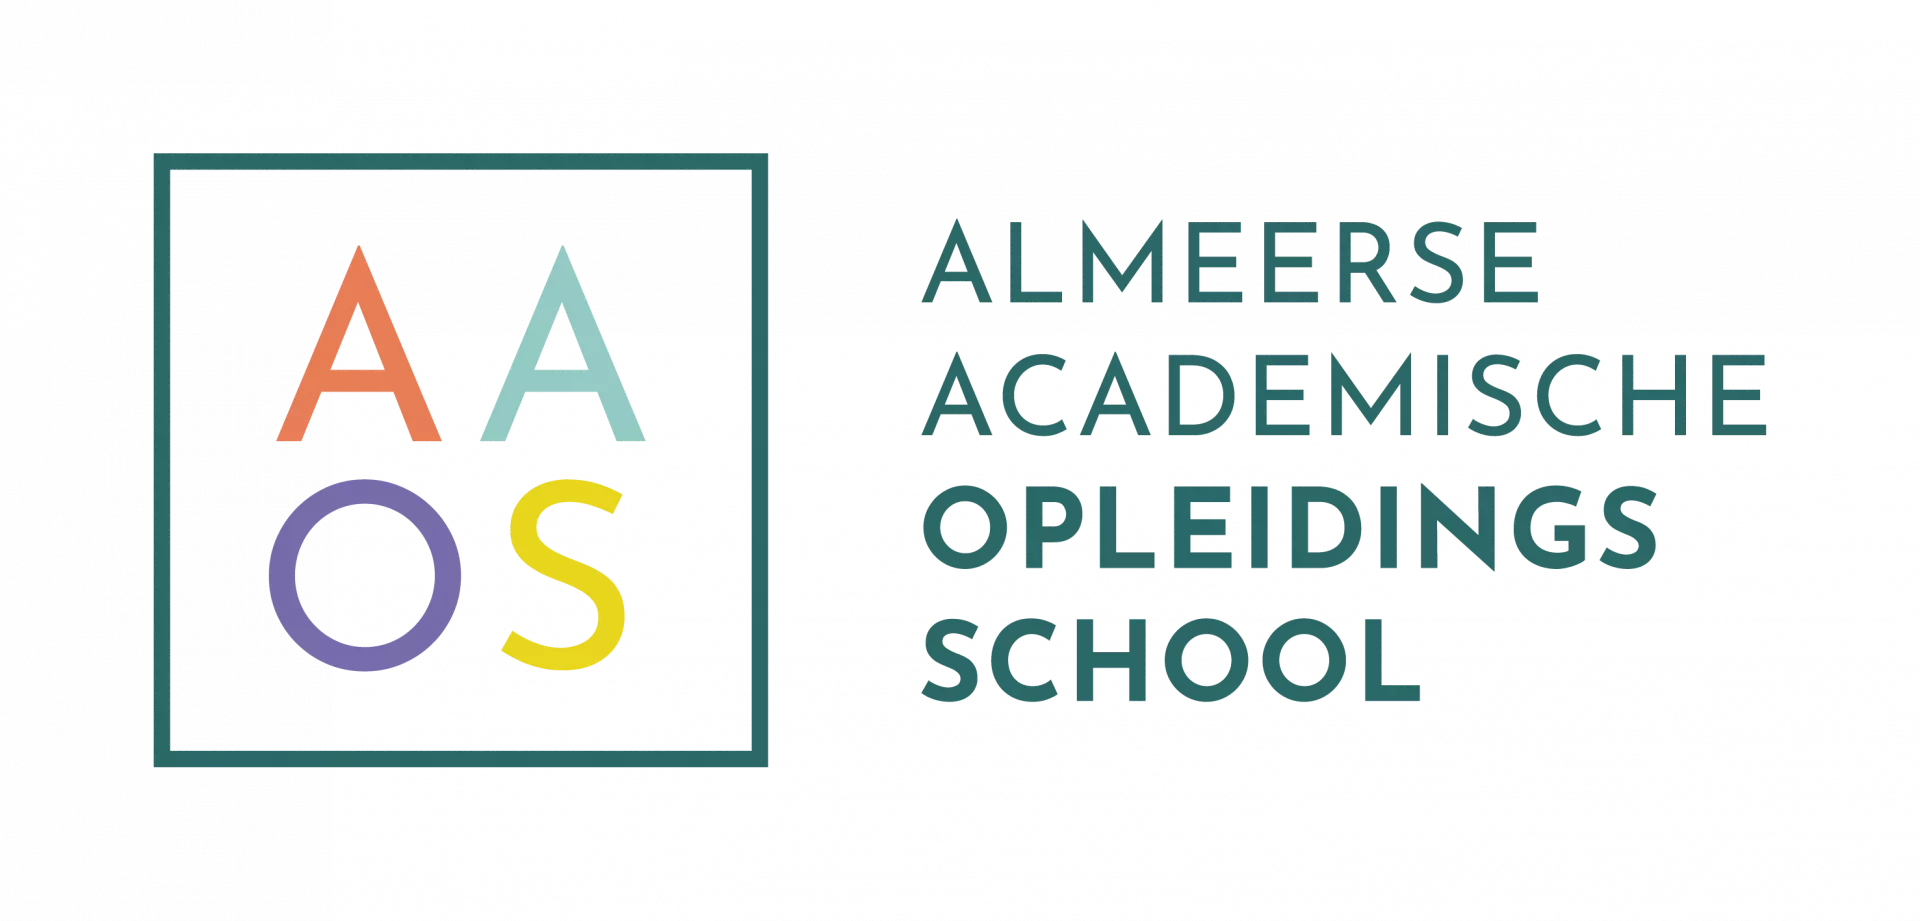 Almeerse Academische Opleidingsschool